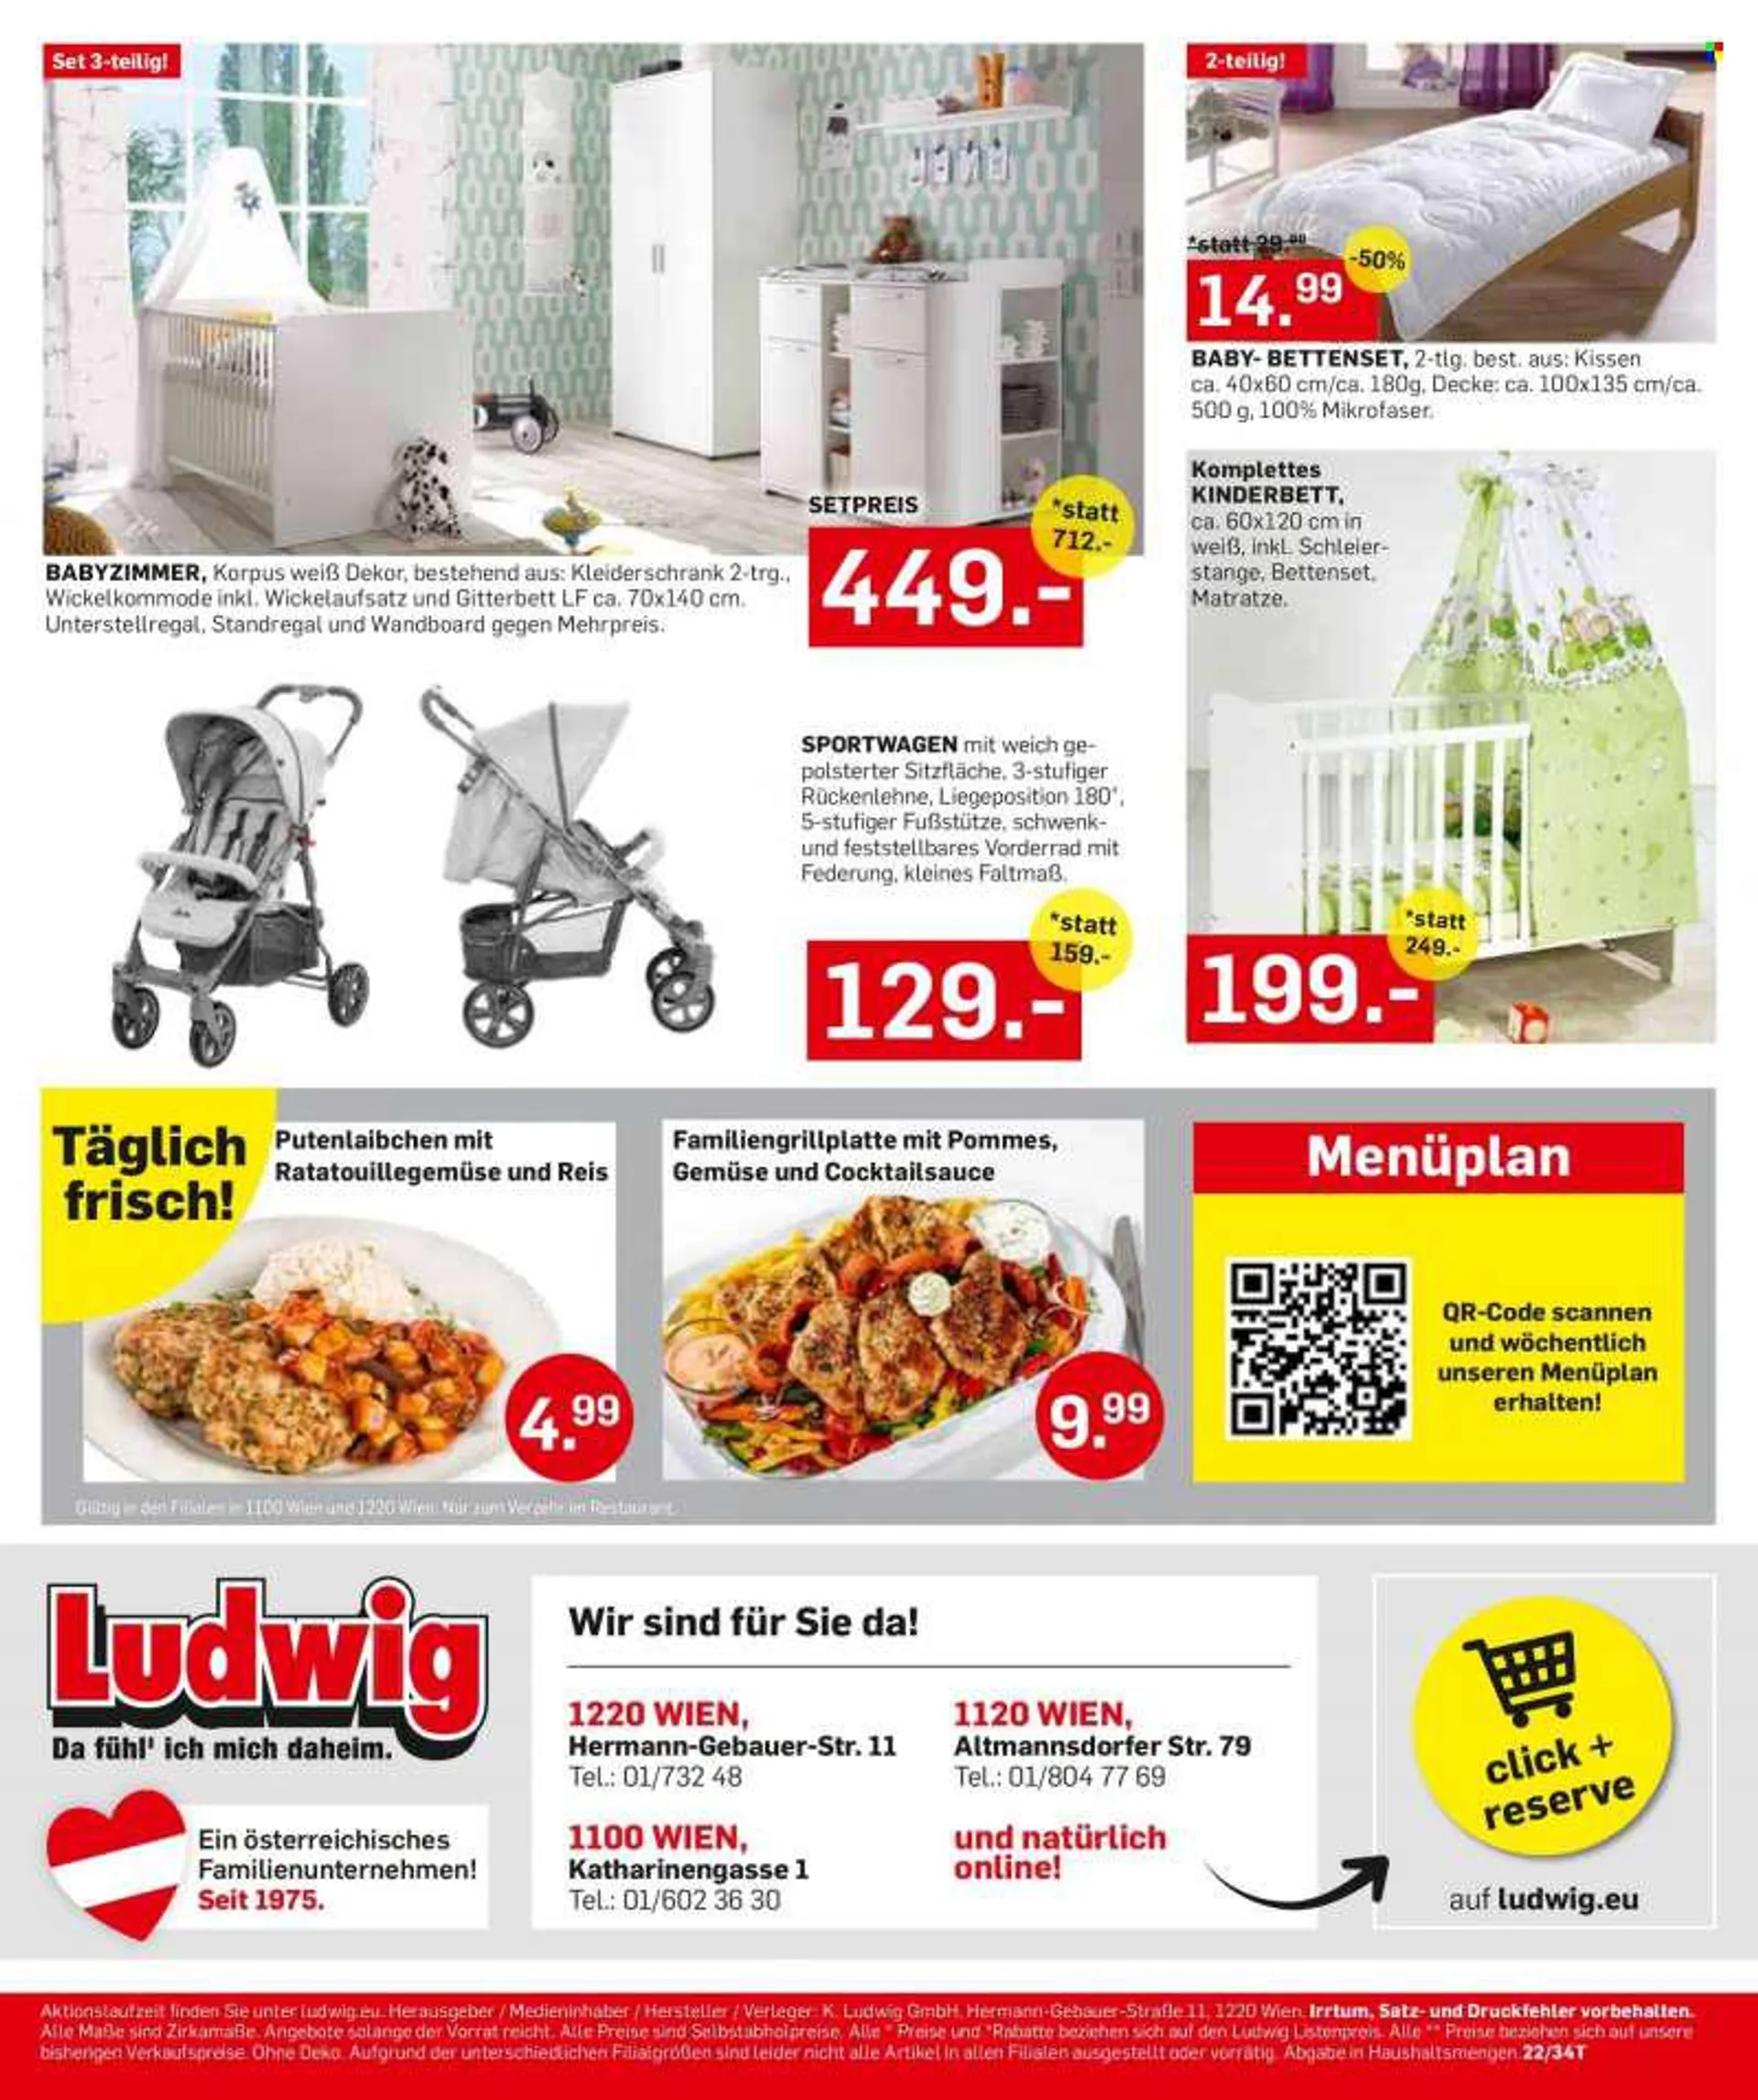 Angebote Möbel Ludwig - Verkaufsprodukte - Matratze, Kleiderschrank, Kinderbett, Kinder Bett, Wandboard, Kissen. Seite 20.